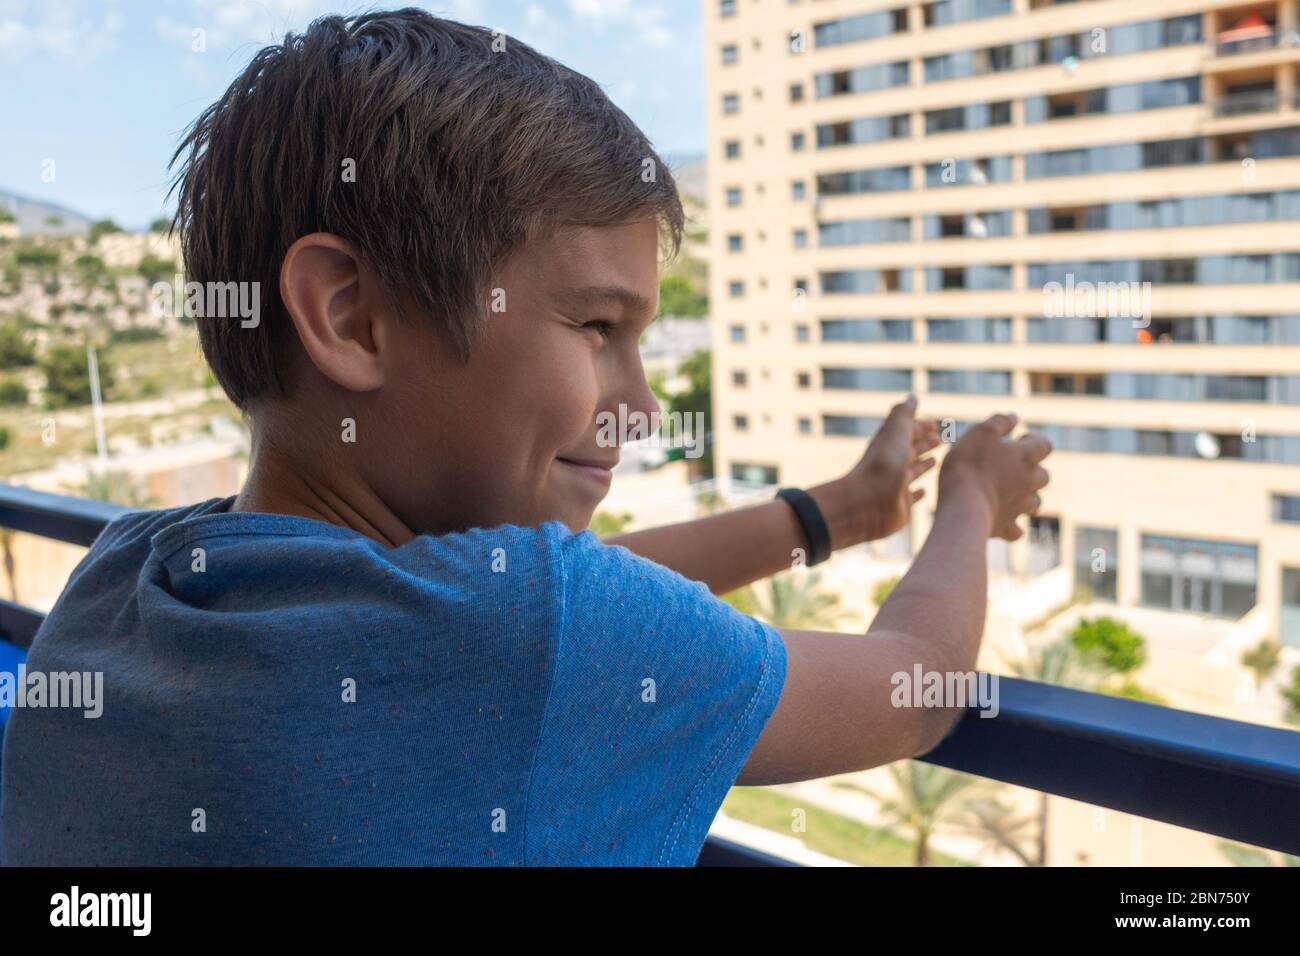 Beifall für medizinisches Personal. Glücklich lächelndes Kind klatscht Hände, applaudieren vom Balkon, um Ärzte, Krankenschwestern, Krankenhausangestellte zu unterstützen Stockfoto